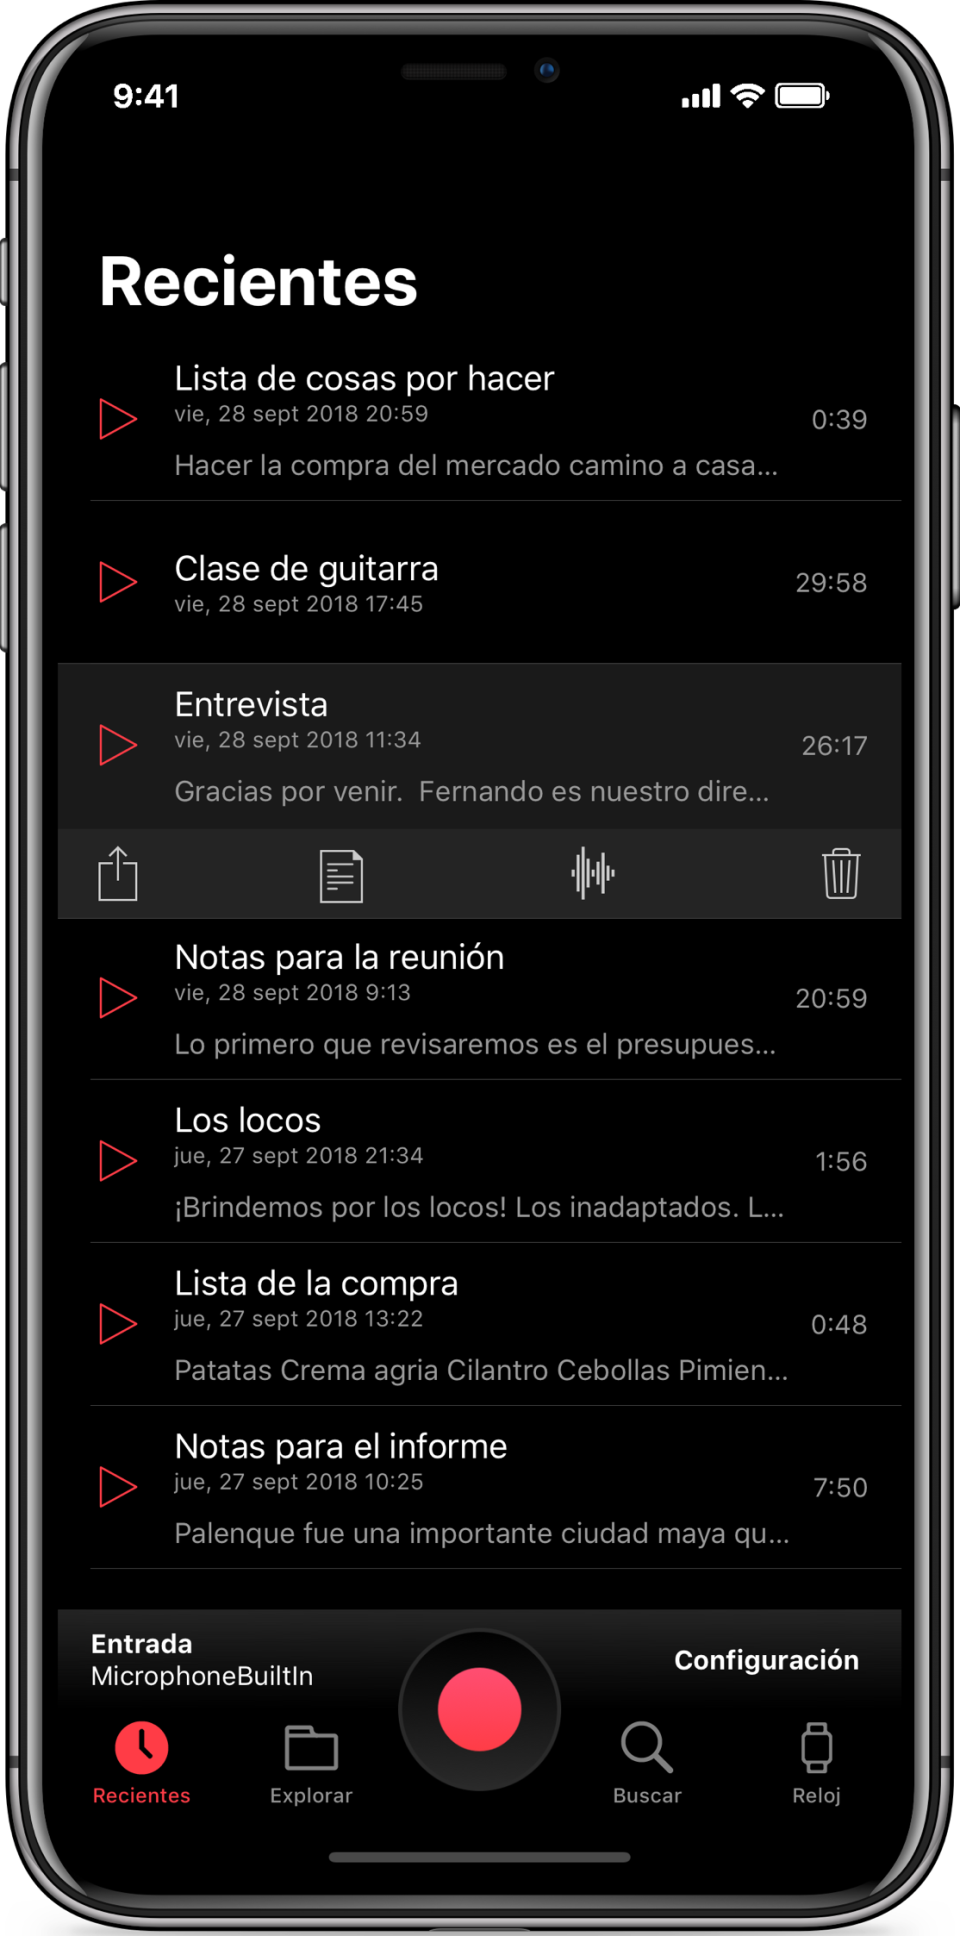 Una potente app para grabación y gestión de audios en el iPhone.